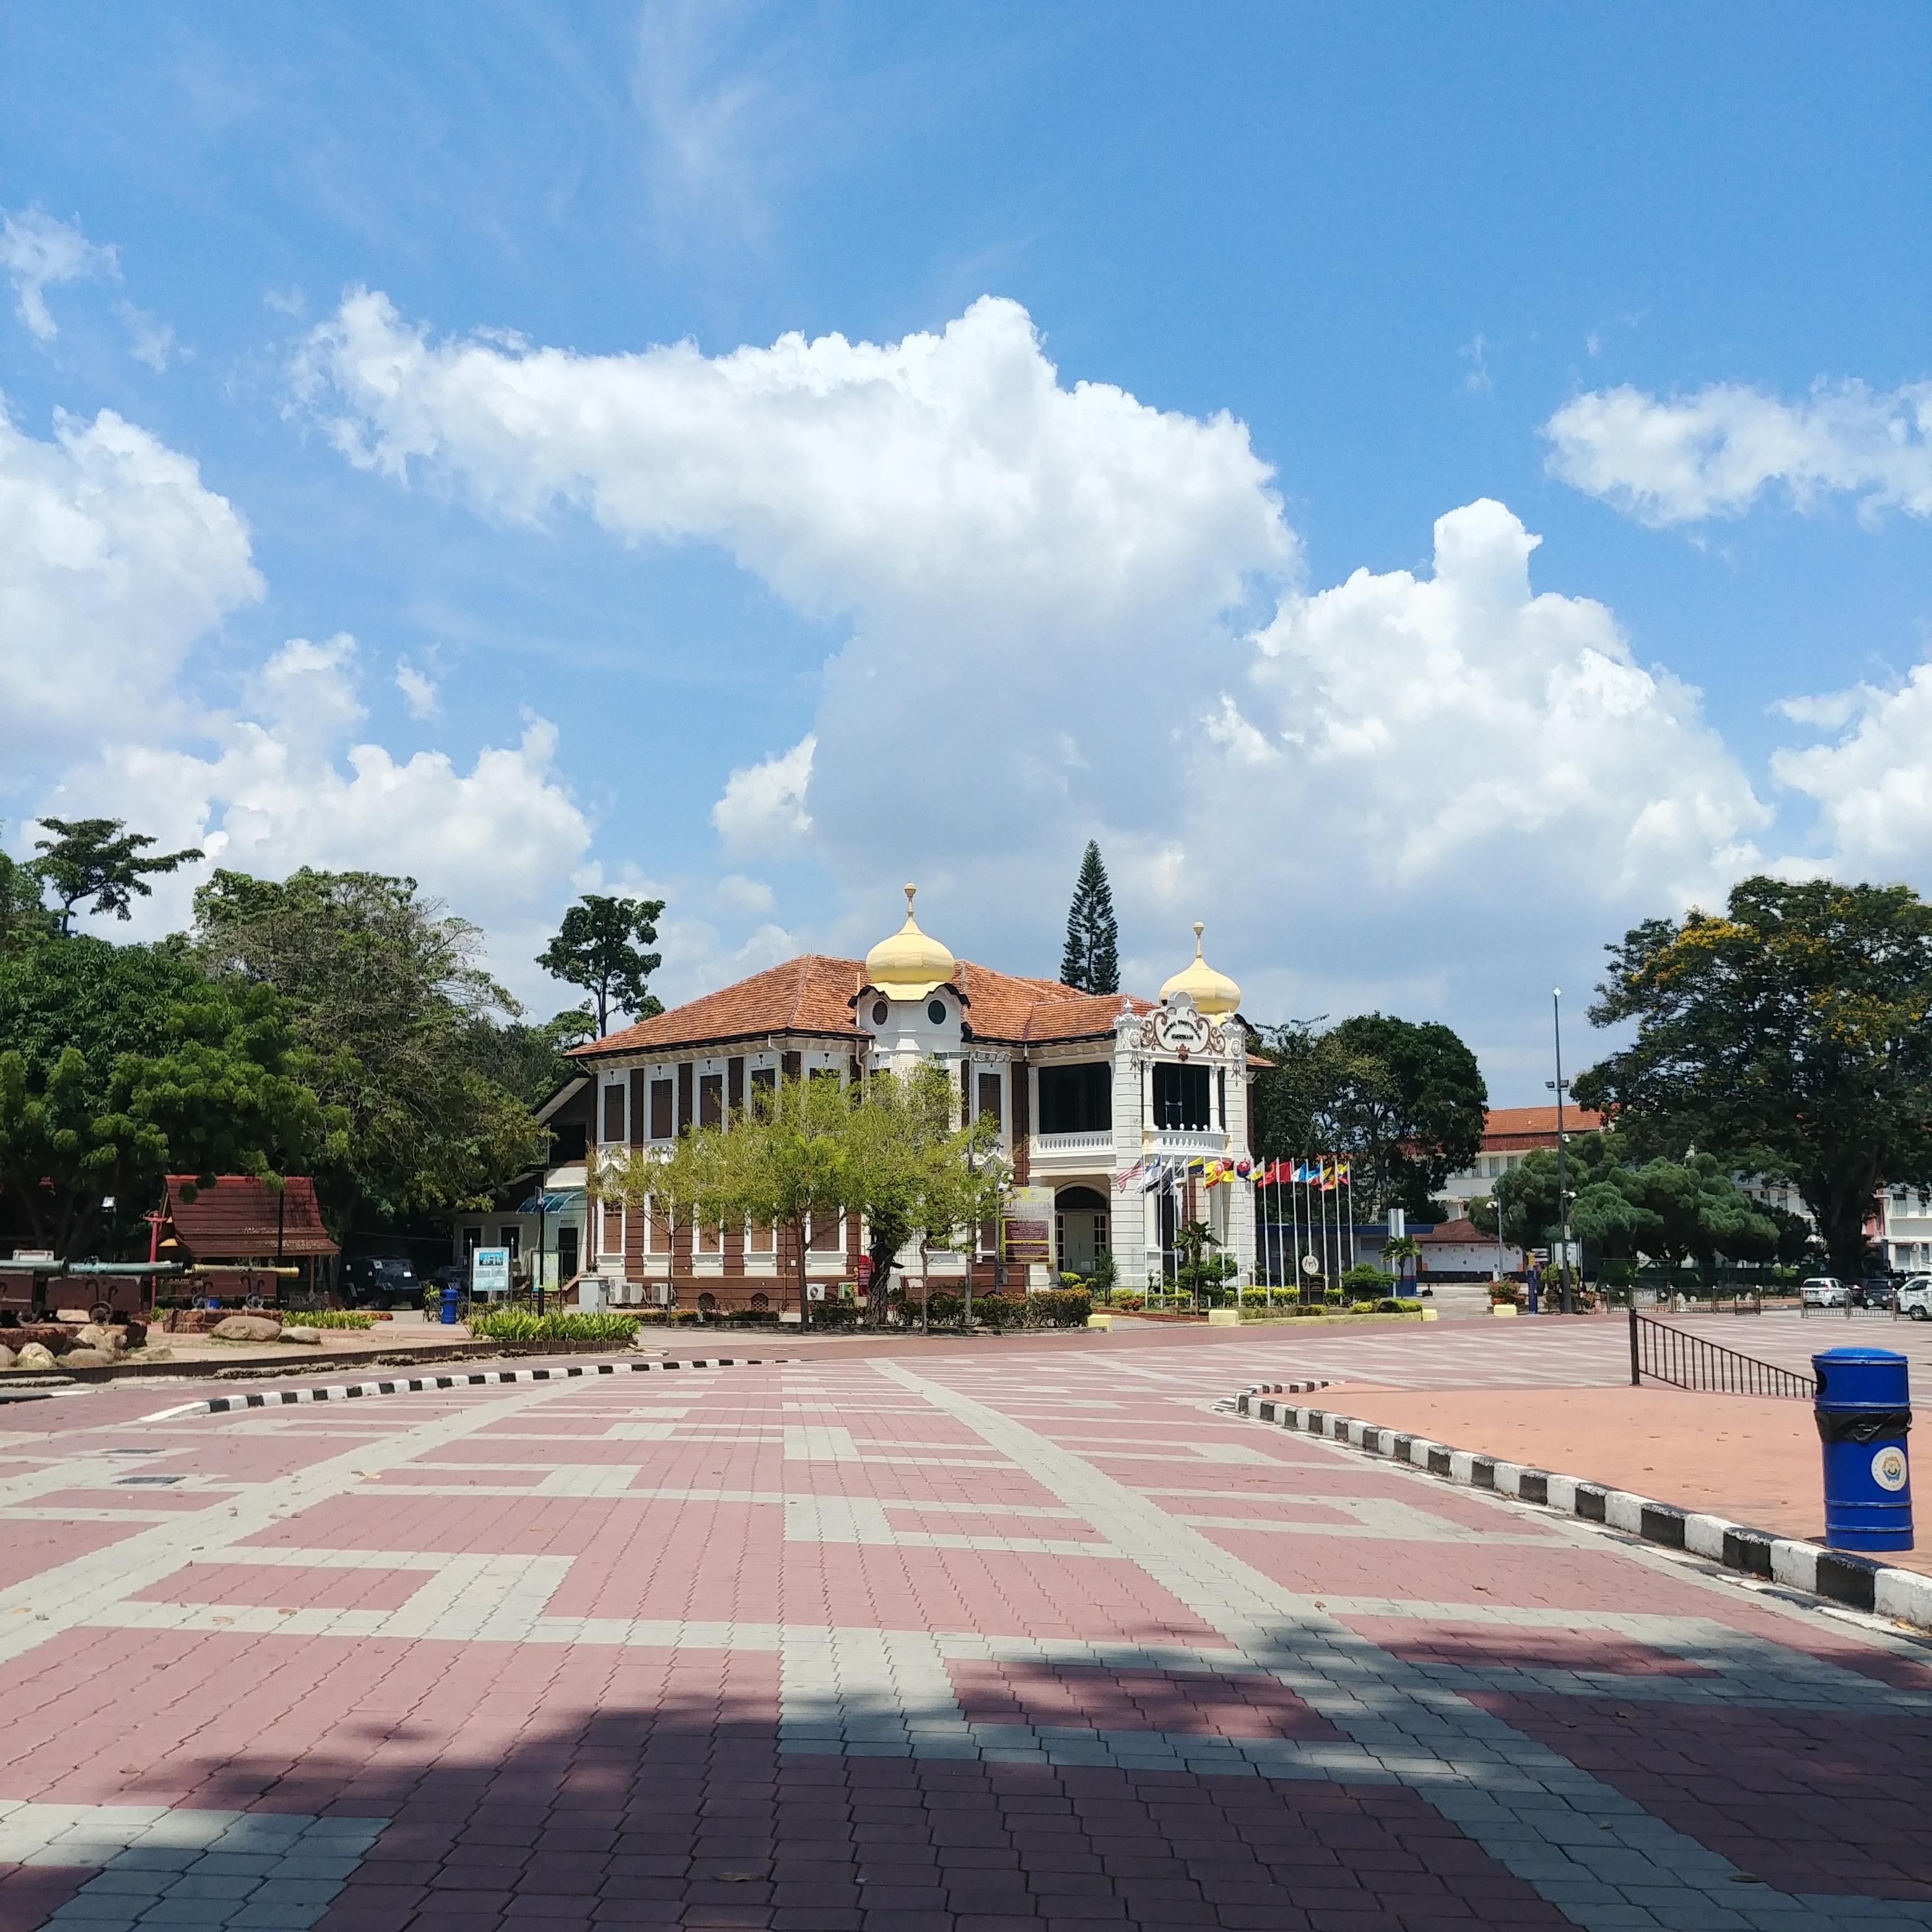 말라카 여행 묘비와 조각상이 있는 교회 유적지 세인트 폴 교회 Gereja St. Paul, Bukit Melaka